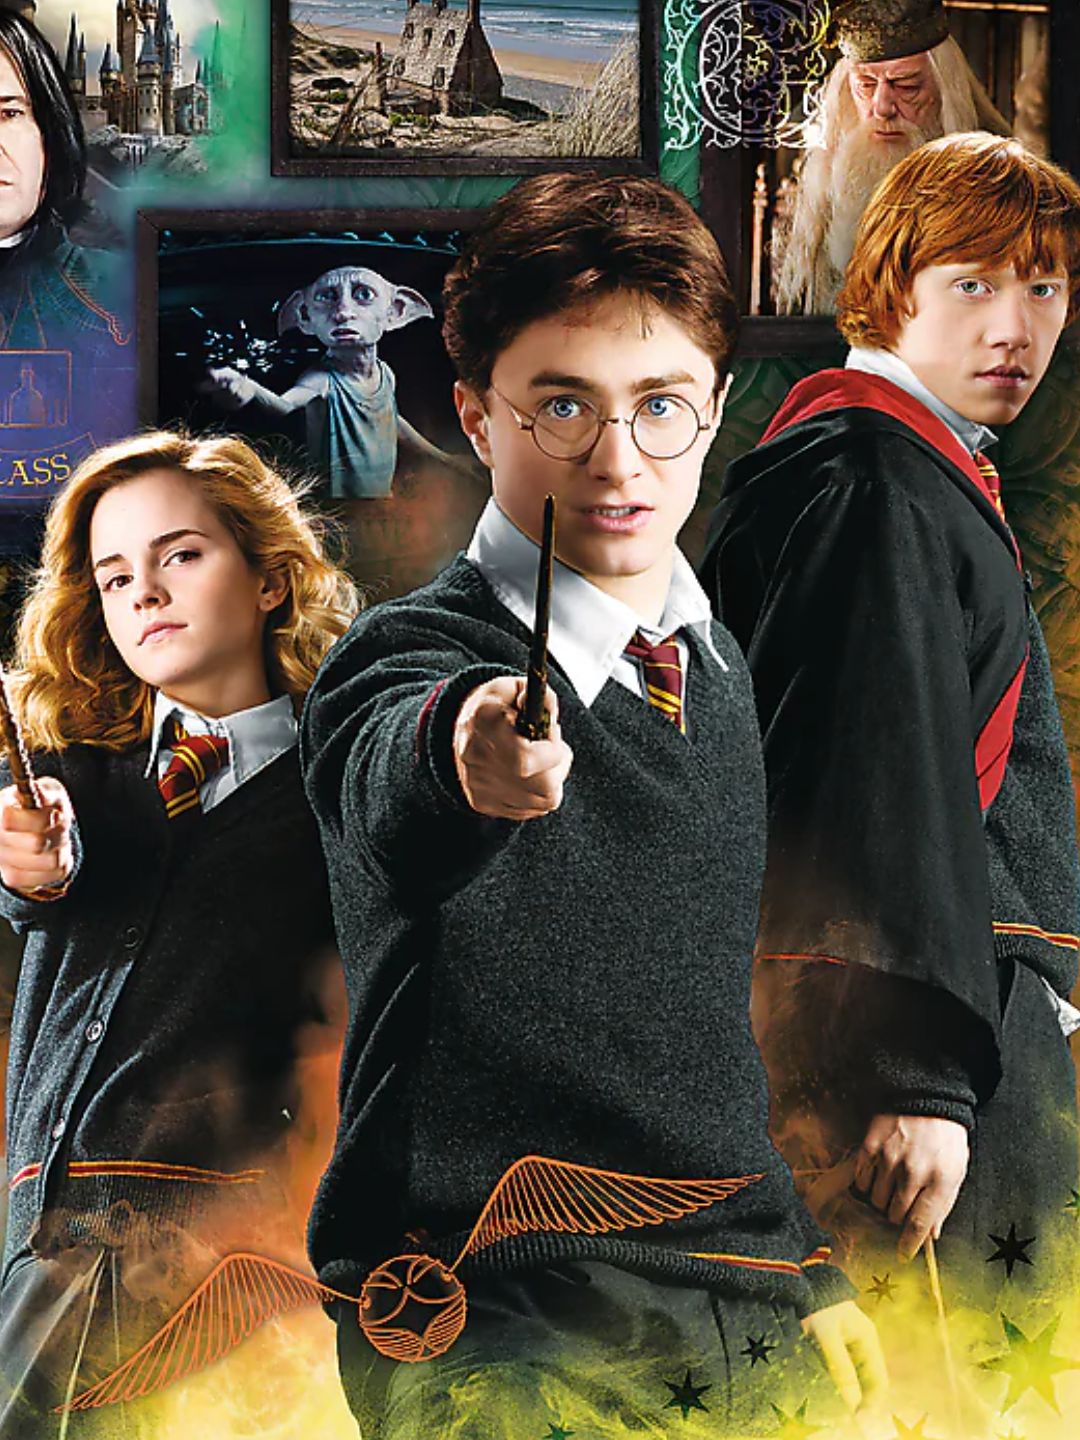 Harry Potter e o Ranking dos Filmes: do pior ao melhor - Nerdizmo